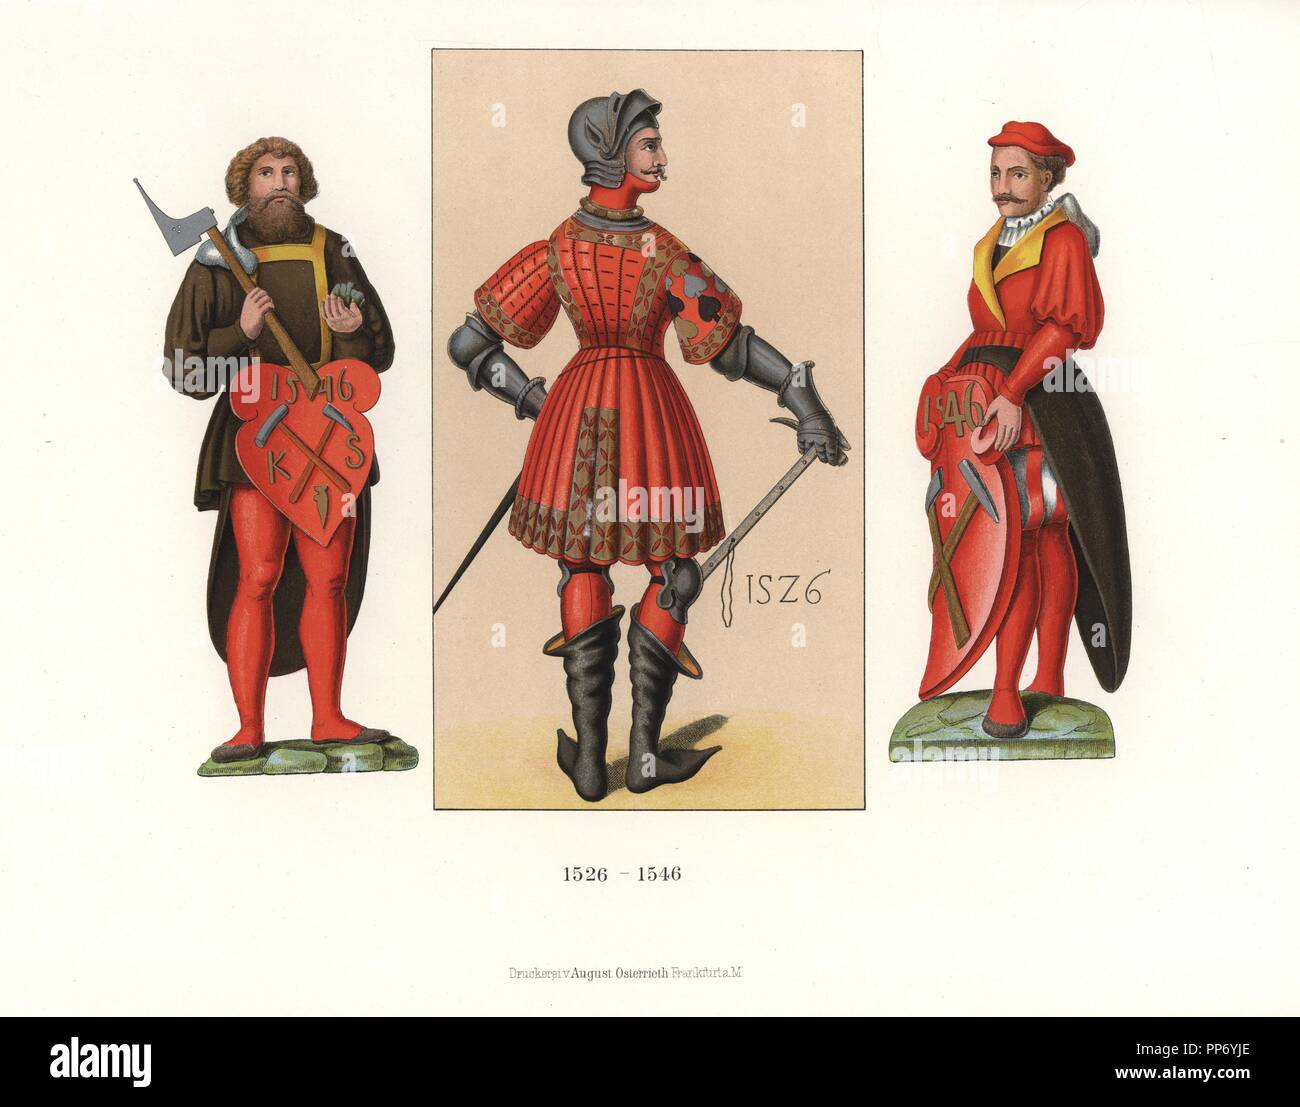 Deutsche männliche Kostüme von 1526-1546. In der Mitte ist ein Portrait von  Casimir Markgraf von Brandenburg, 1526, in Rüstung, Helm, Röcke und Schuhe,  sofern als Muster für seine Schneider und Waffenschmieden. An